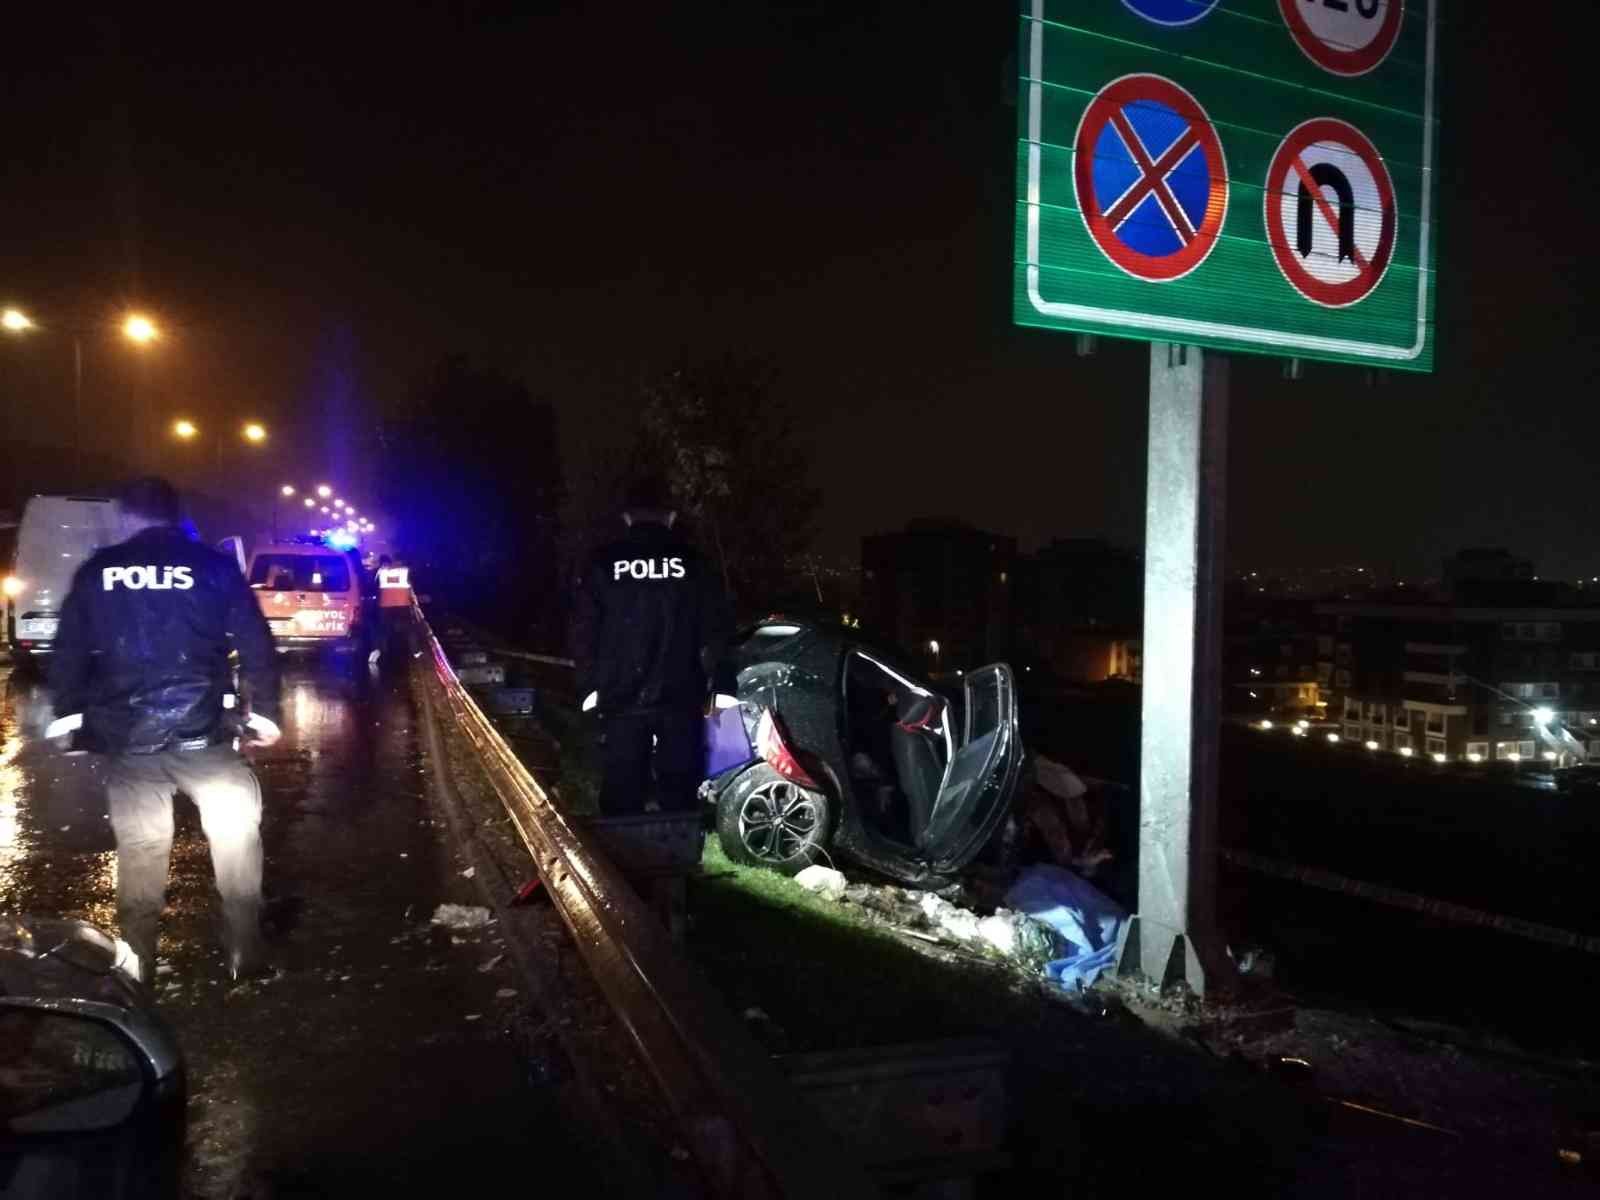 İzmir’de kaza sonrası hurdaya dönen aracın sürücüsü hayatını kaybetti #izmir